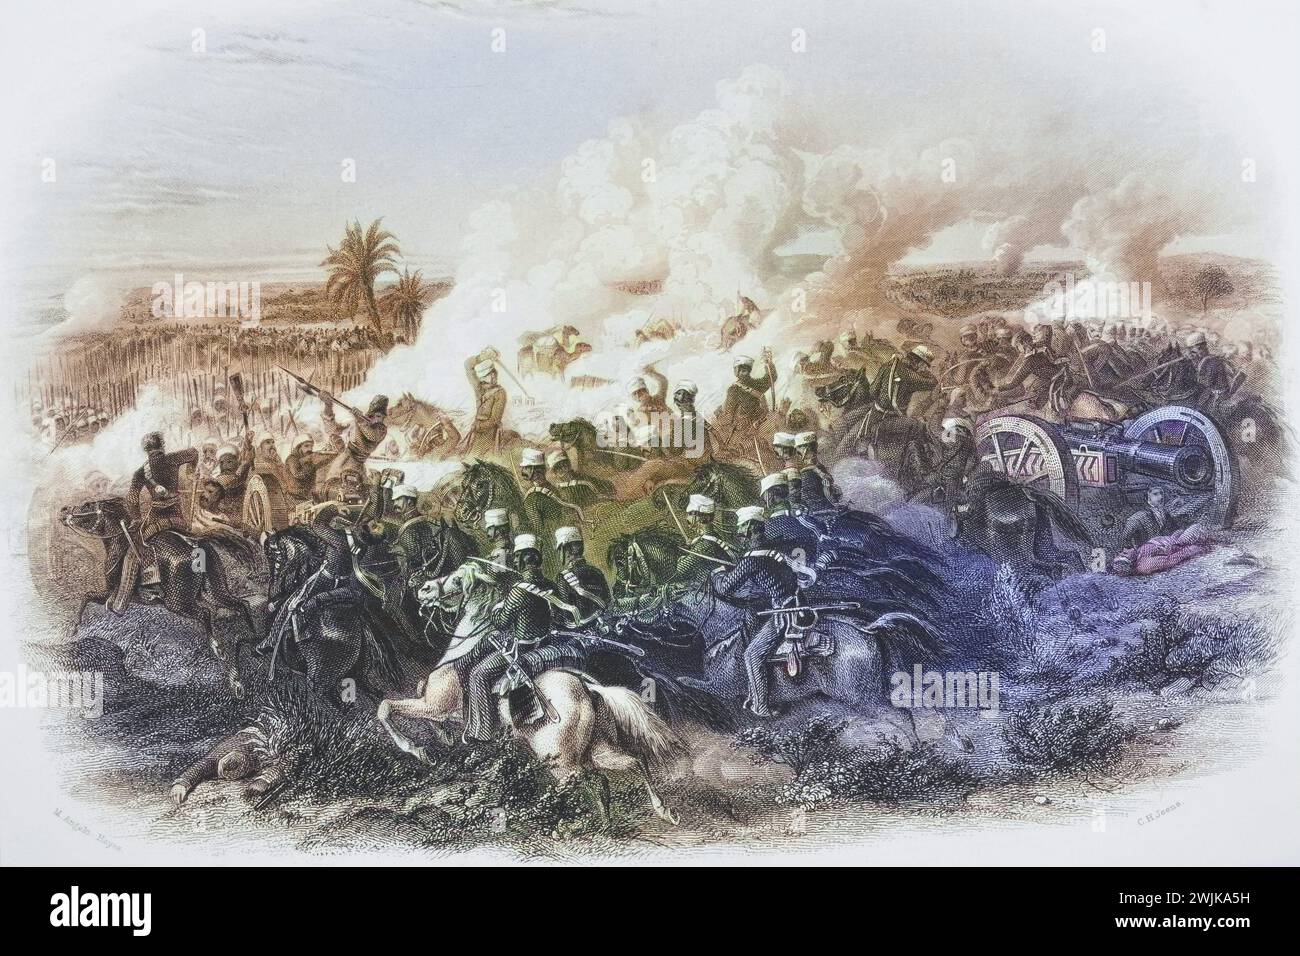 Die Schlacht von Moodkee in Indien, 1845, Historisch, digital restaurierte Reproduktion von einer Vorlage aus dem 19. Jahrhundert, Record date not stated Stock Photo